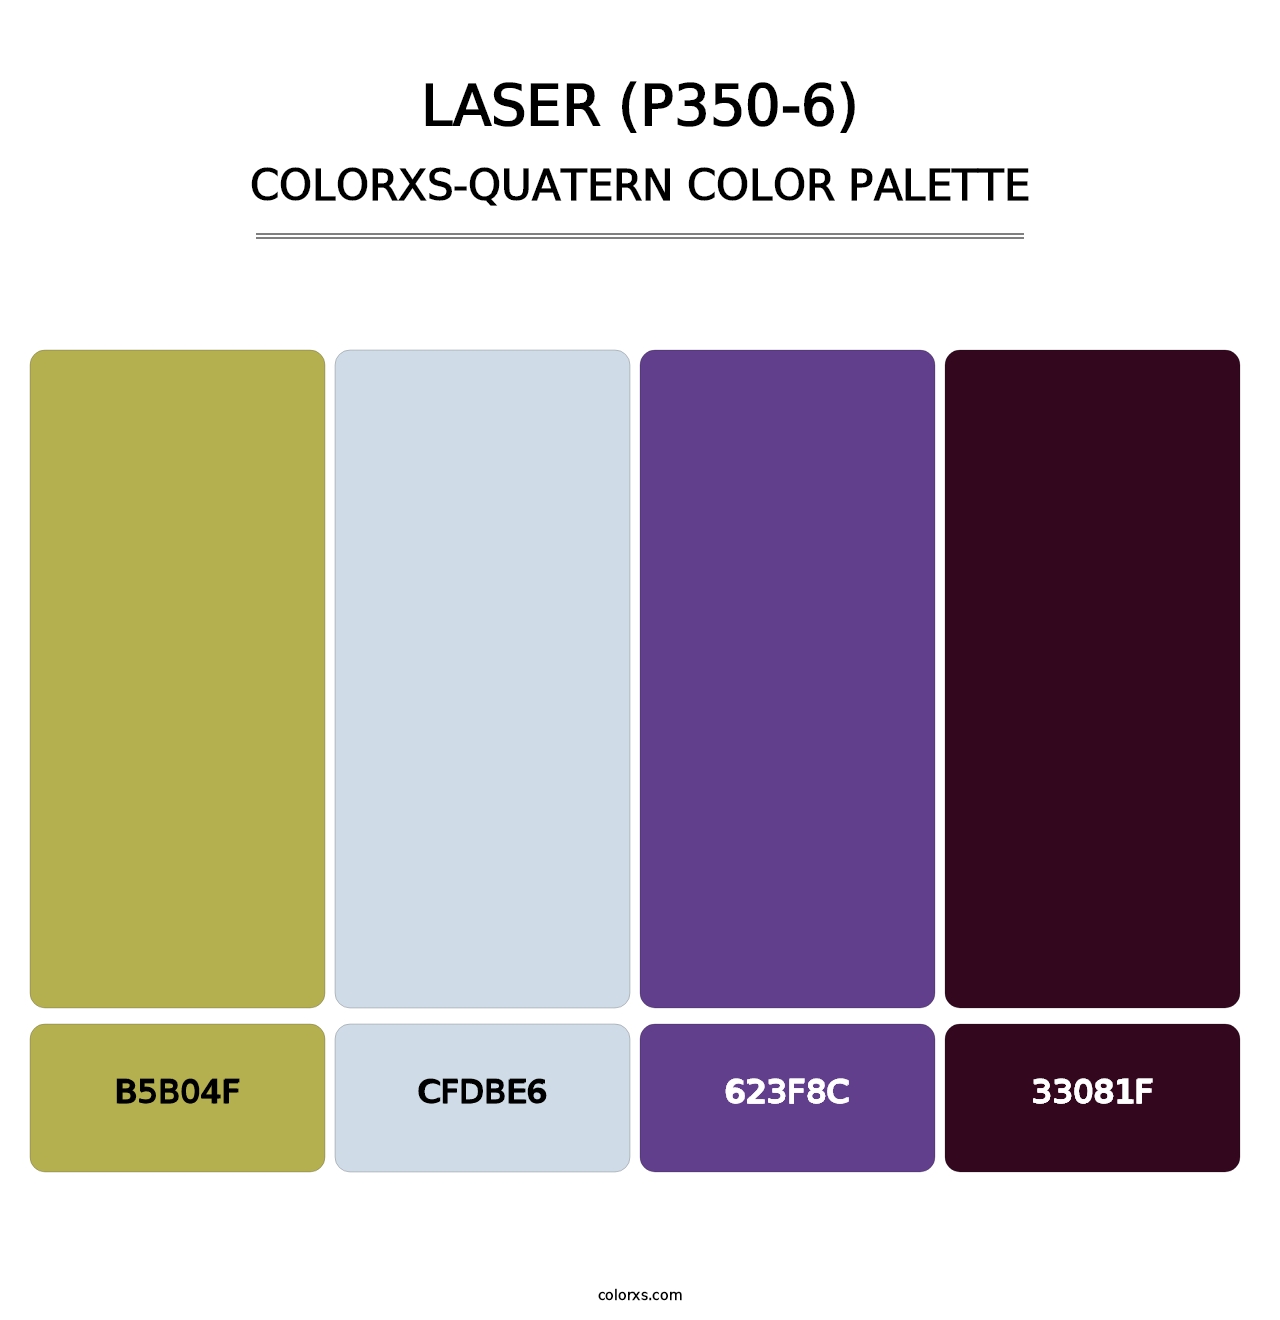 Laser (P350-6) - Colorxs Quatern Palette